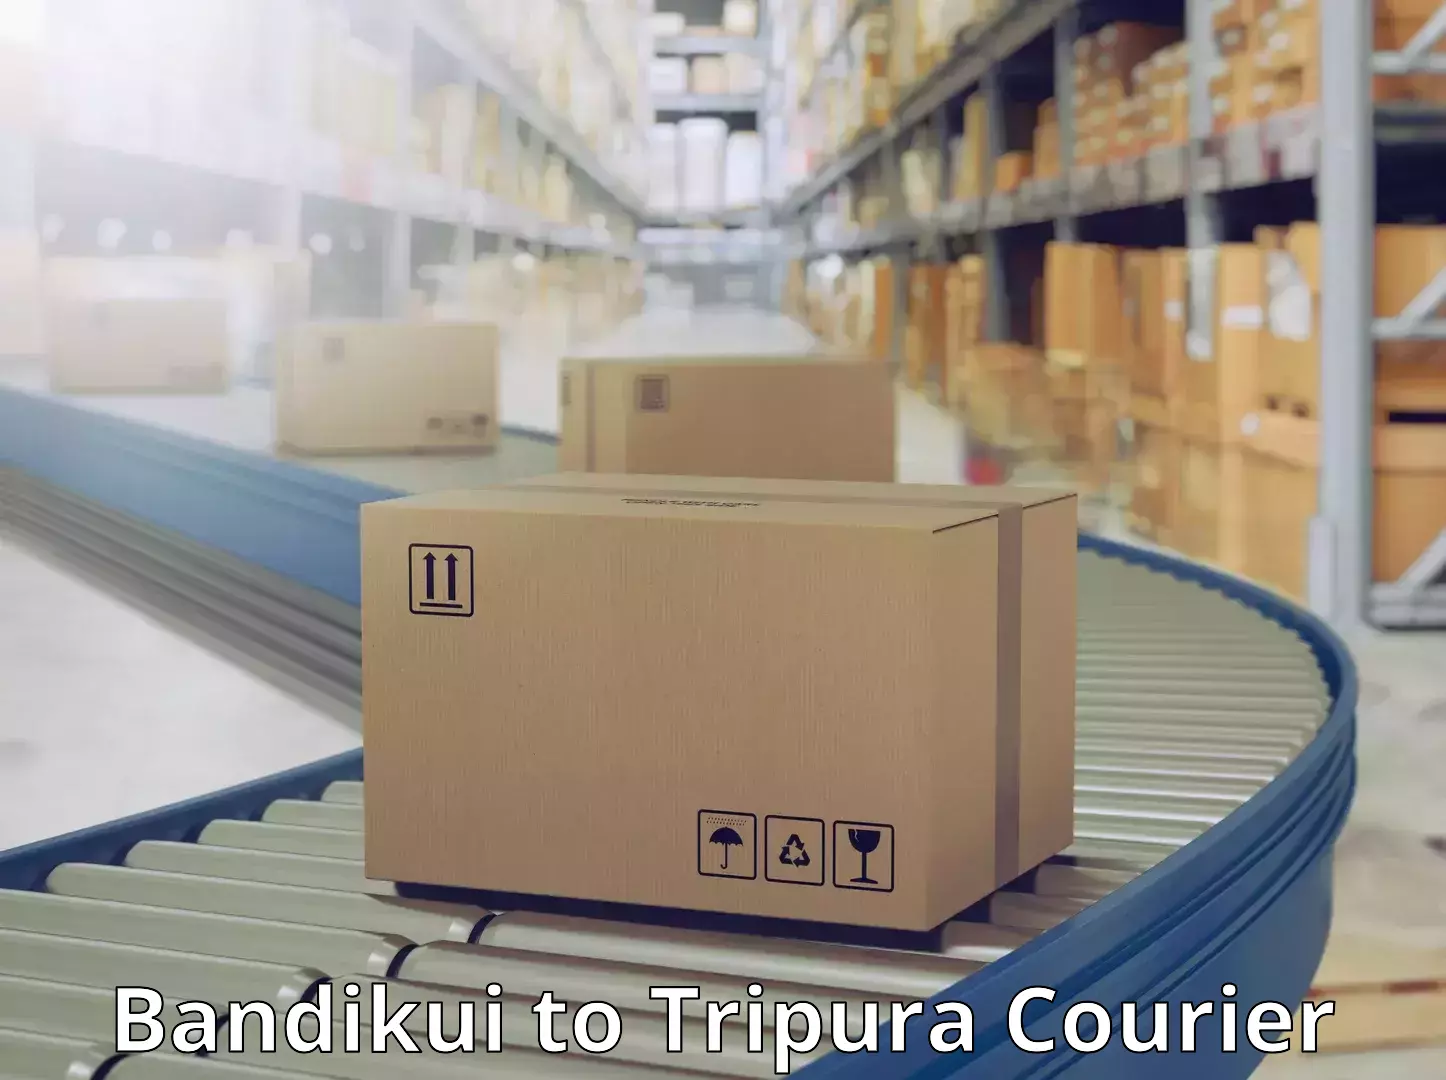 Reliable courier service Bandikui to IIIT Agartala